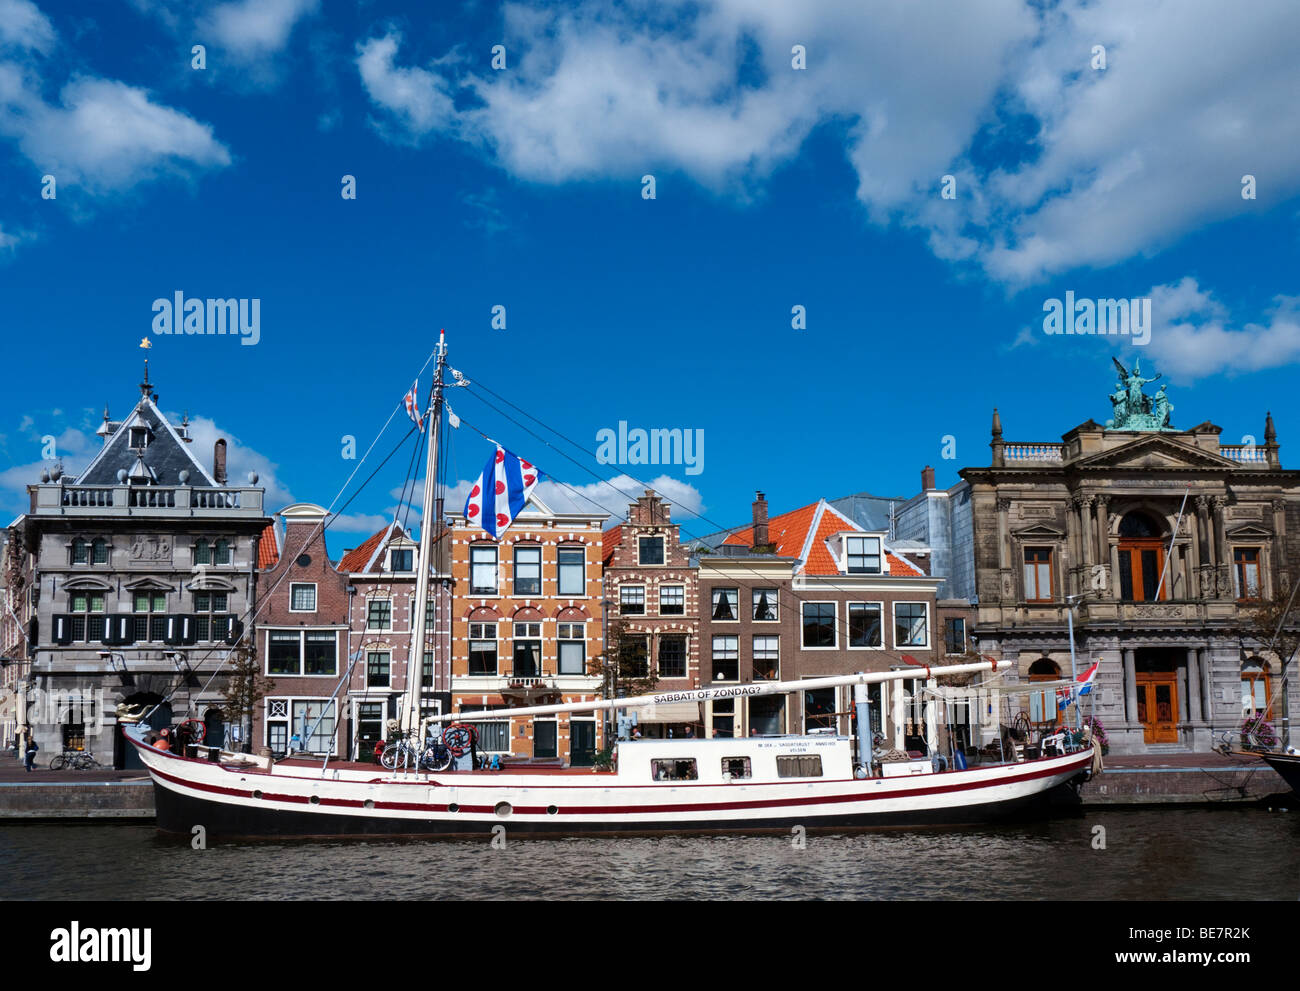 Bateau amarré sur la rivière Spaarne et maisons historiques dans Haarlem Pays-Bas Banque D'Images